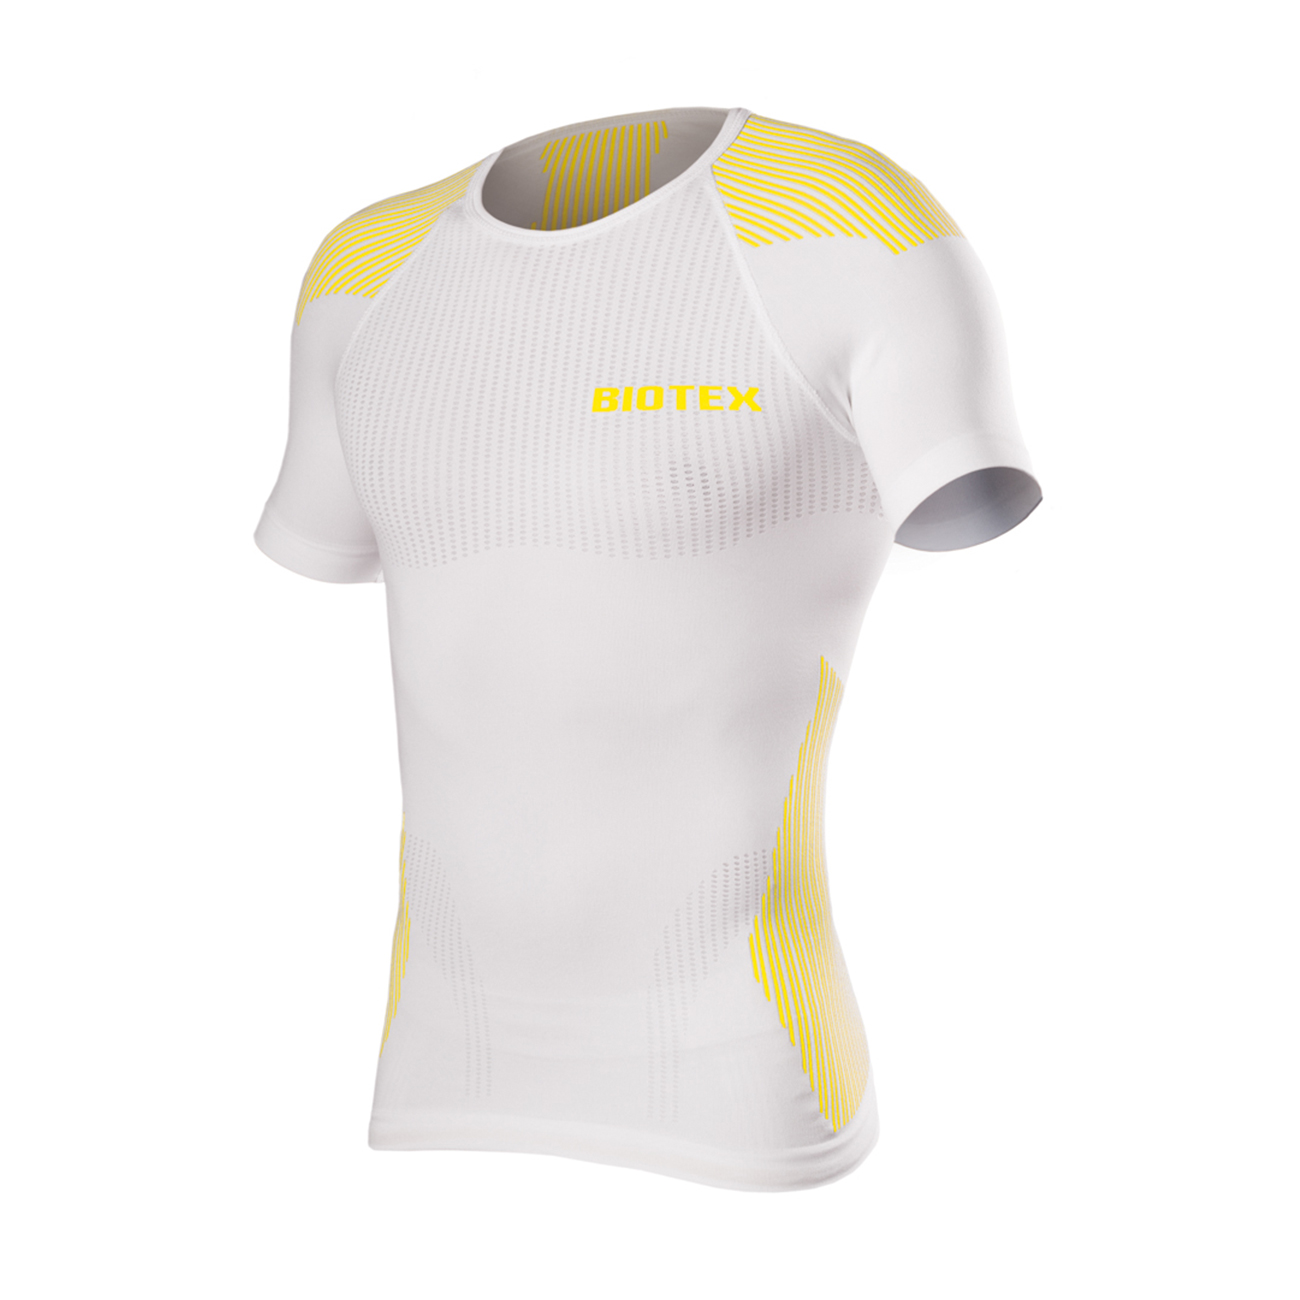 
                BIOTEX Cyklistické triko s krátkým rukávem - BIOFLEX RAGLAN - žlutá/bílá XS-S
            